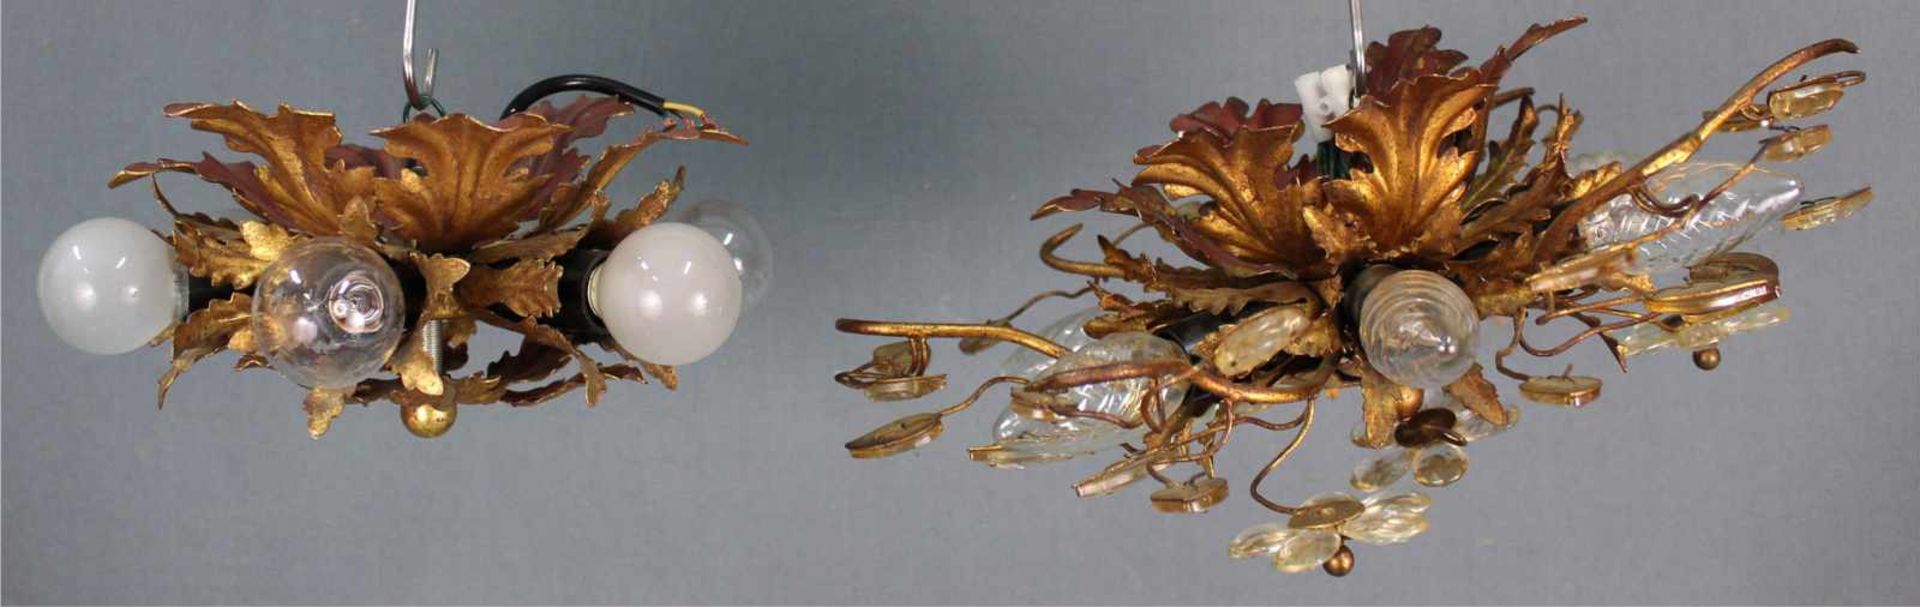 2 Deckenlampen im Barockstil. Metallblätter, goldfarben.Durchmesser bis 40 cm.2 ceiling lamps in - Image 8 of 9